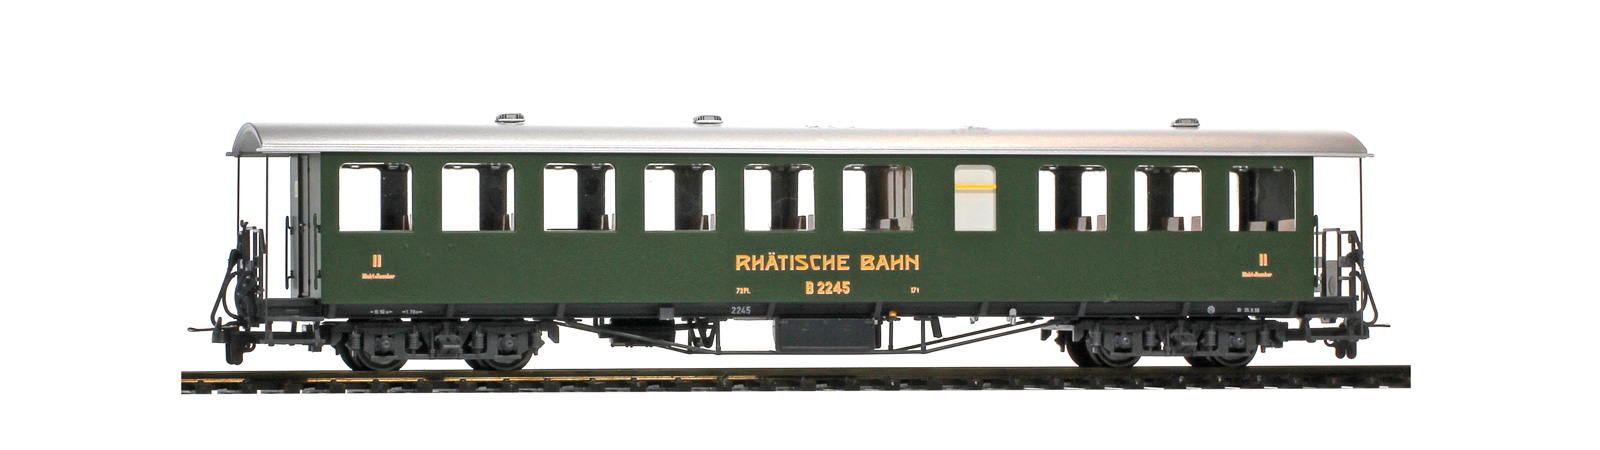 RhB B2245 Dampfzug 4-achser 2. Klasse, Nostalgie-Plattformwagen, grün